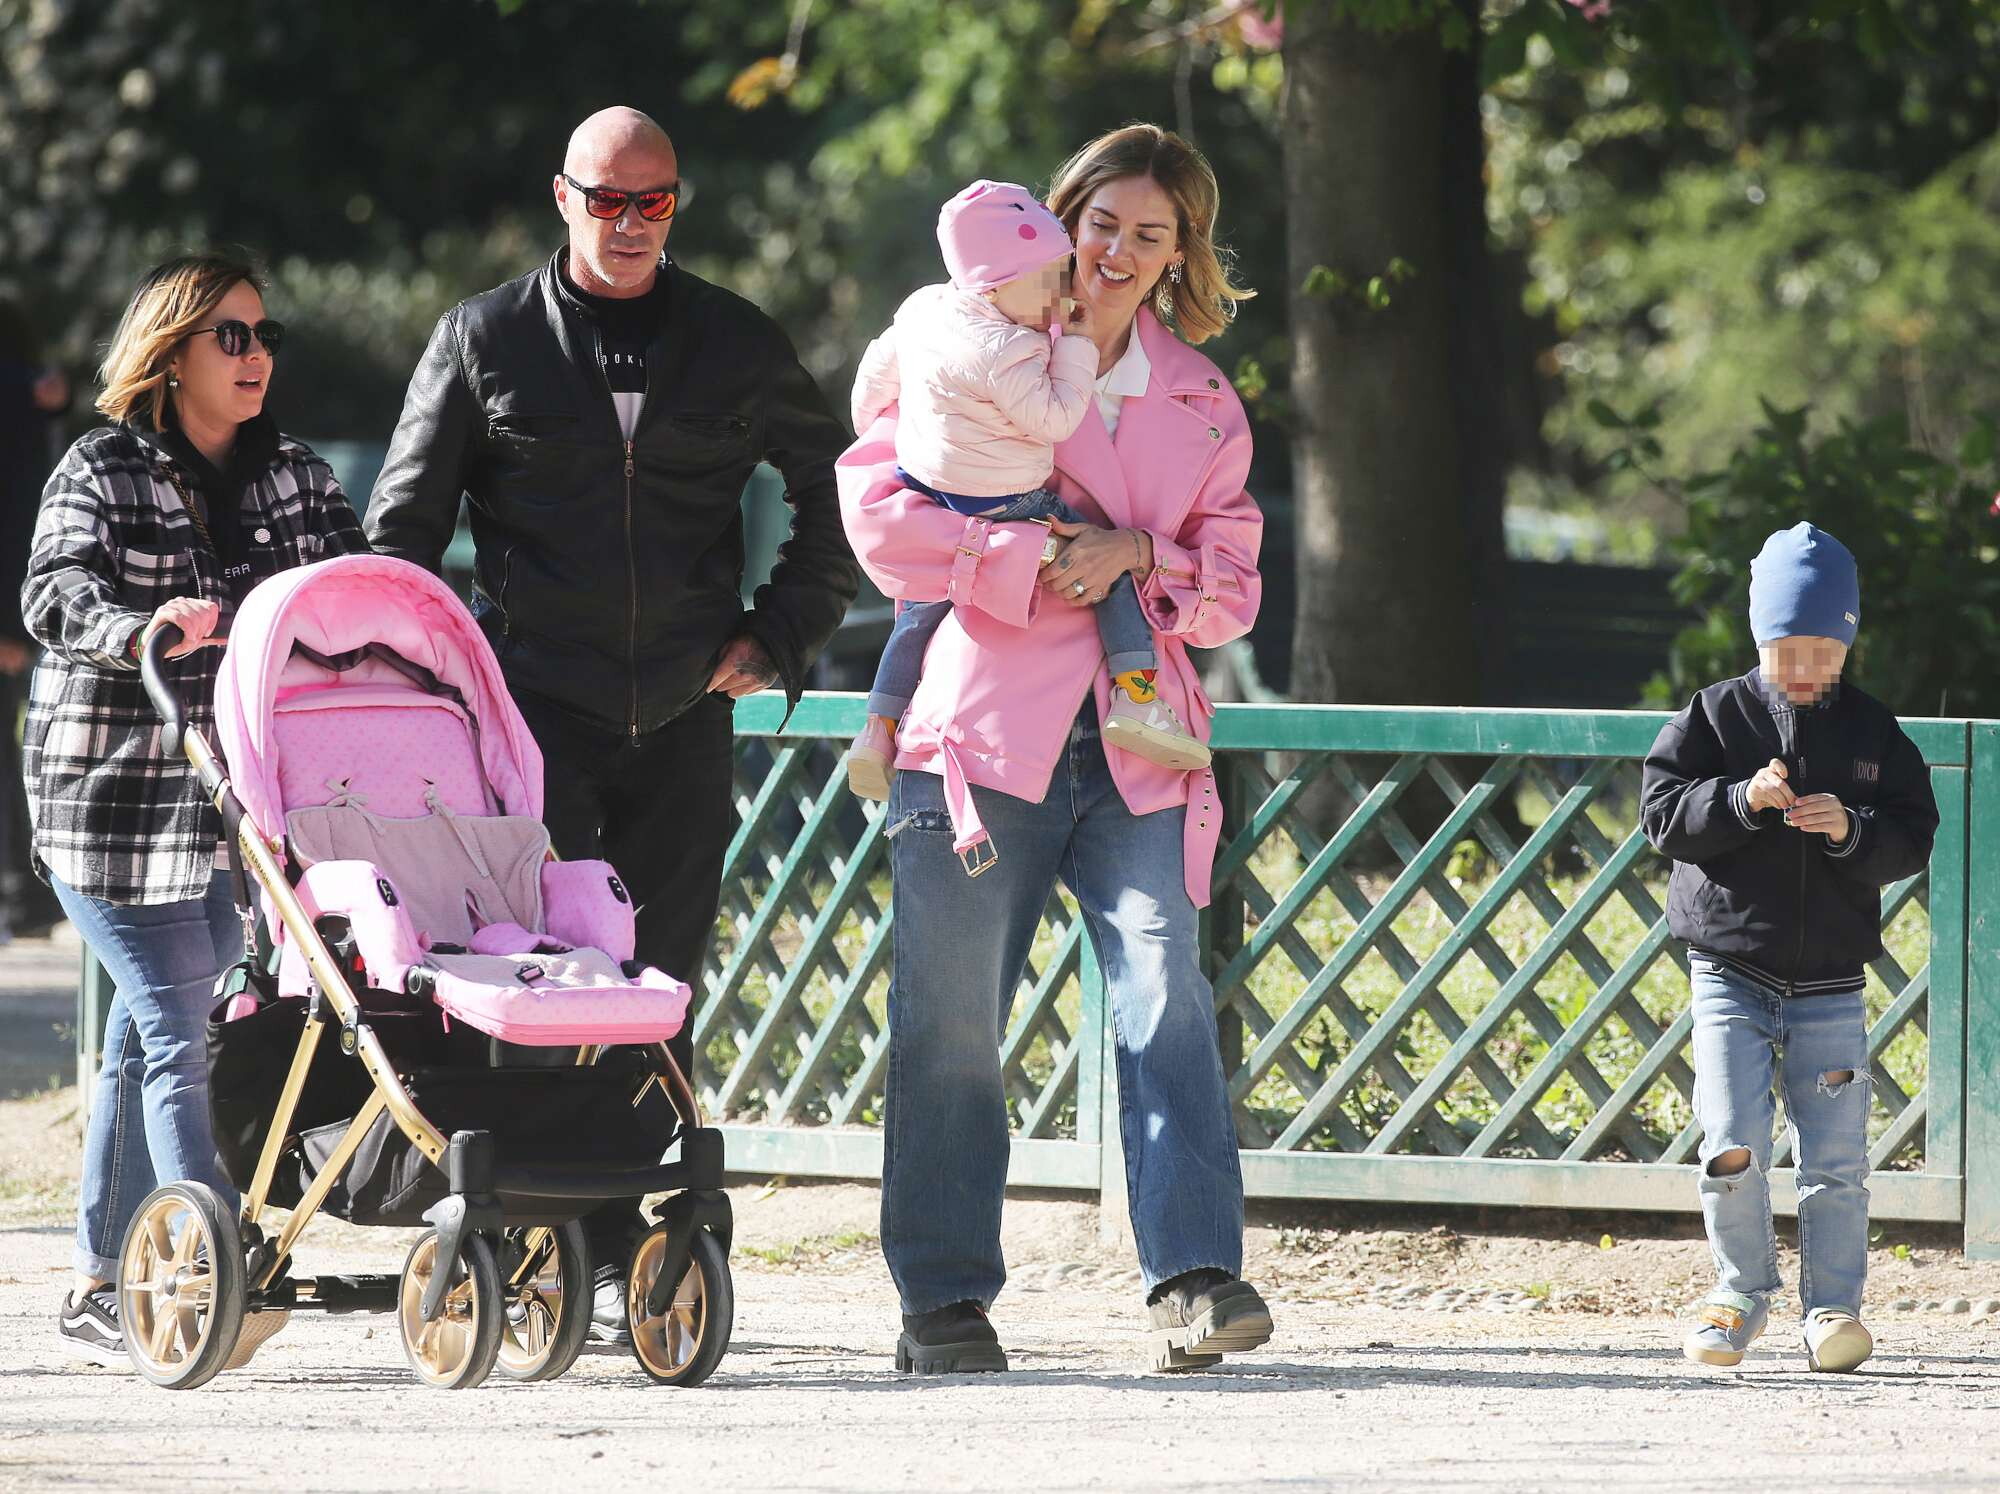 Chiara Ferragni, la sua prima apparizione pubblica, al parco con mamma e figli, rassicura i fan “Sto bene dai”